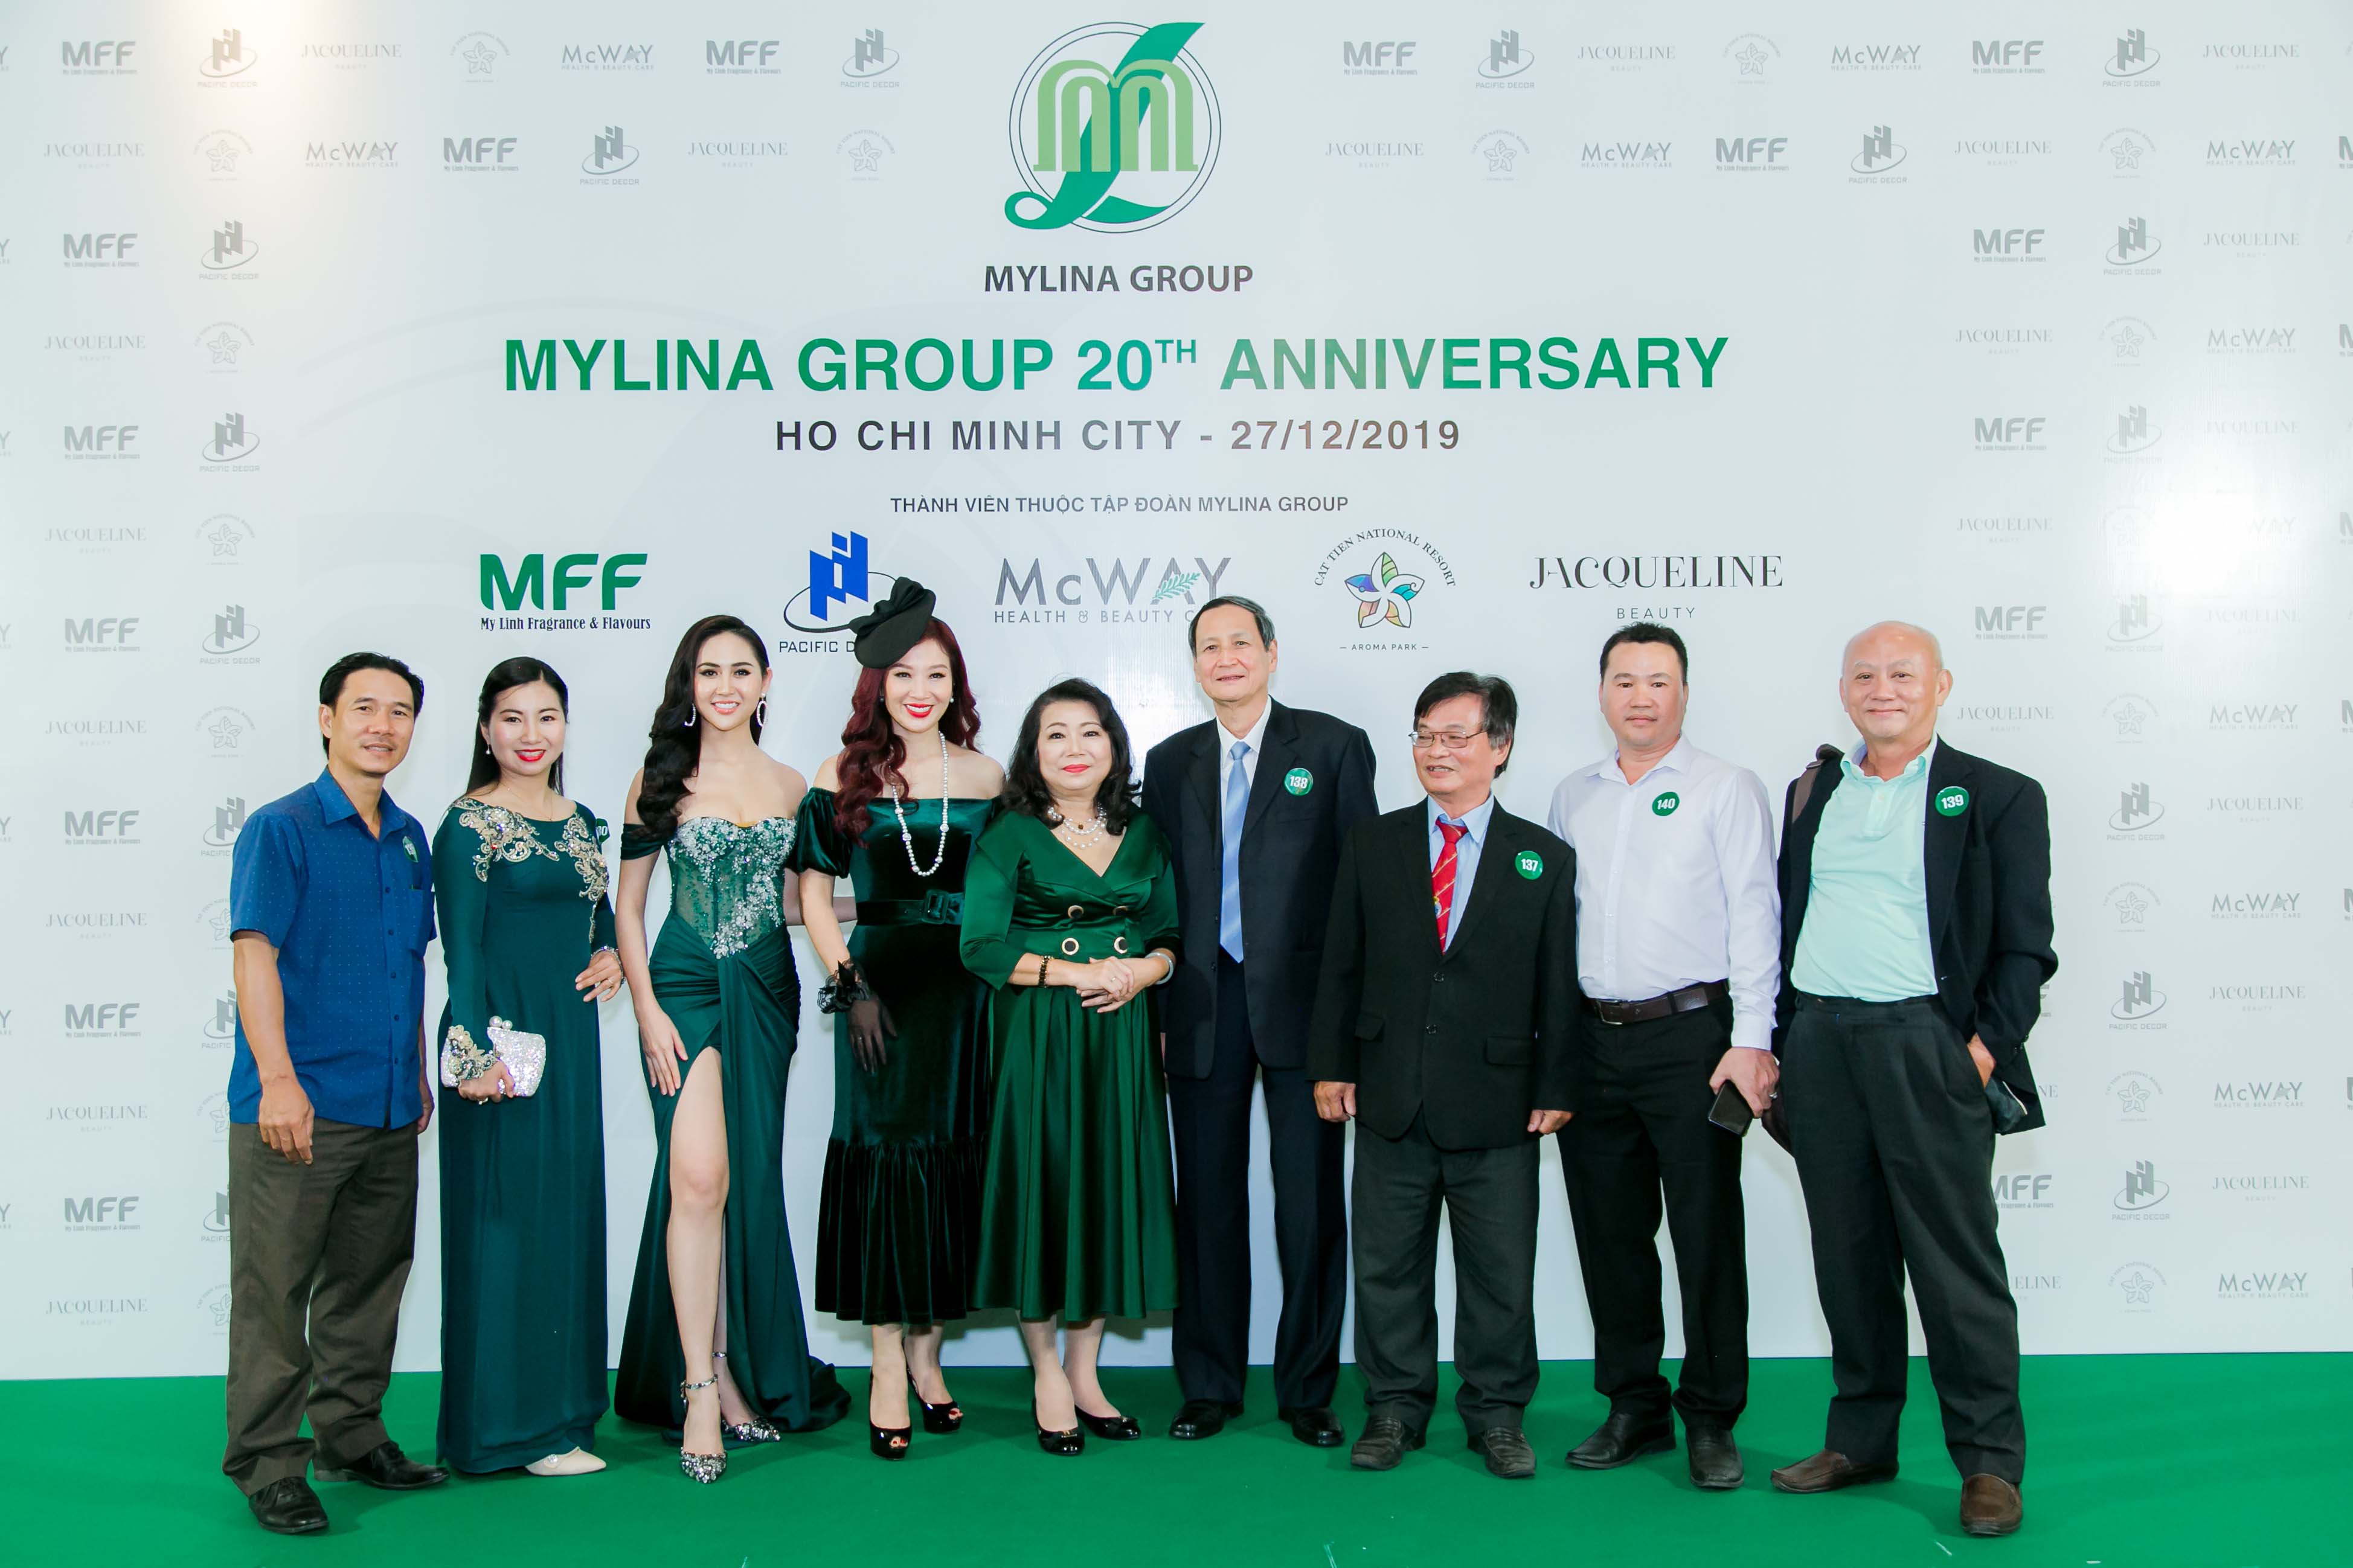 Các ban ngành, hiệp hội đến tham dự buổi tiệc cùng Mylina Group